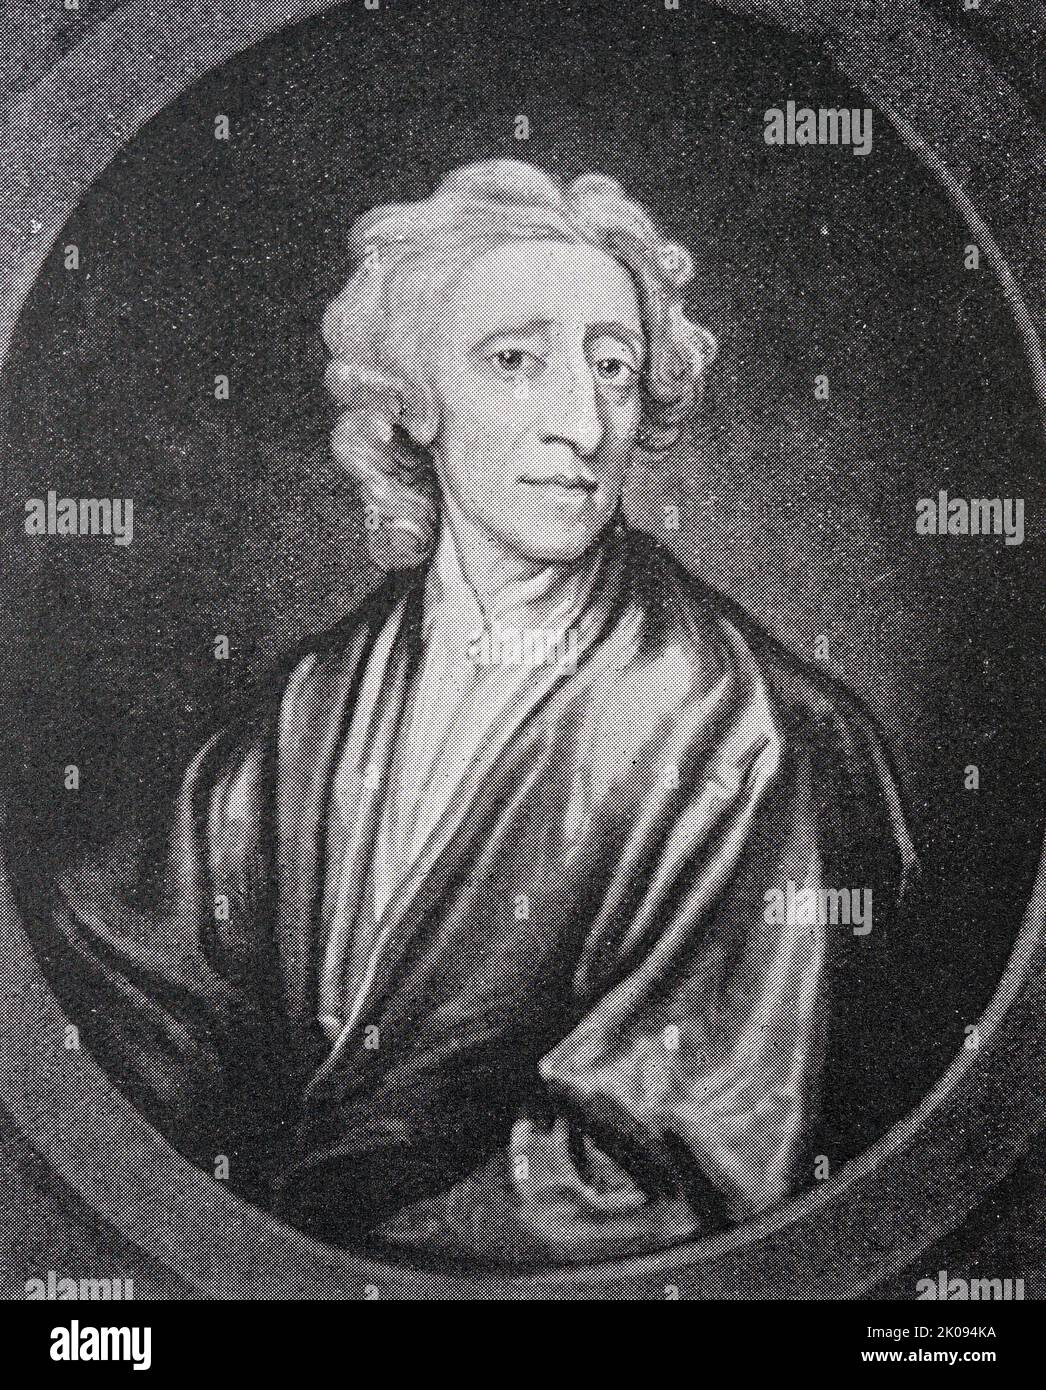 Stampa di John Locke, da un dipinto di Kneller. John Locke FRS (29 agosto 1632 – 28 ottobre 1704) è stato un filosofo e medico inglese, ampiamente considerato come uno dei più influenti pensatori dell'Illuminismo e comunemente noto come il Padre del liberalismo. Foto Stock